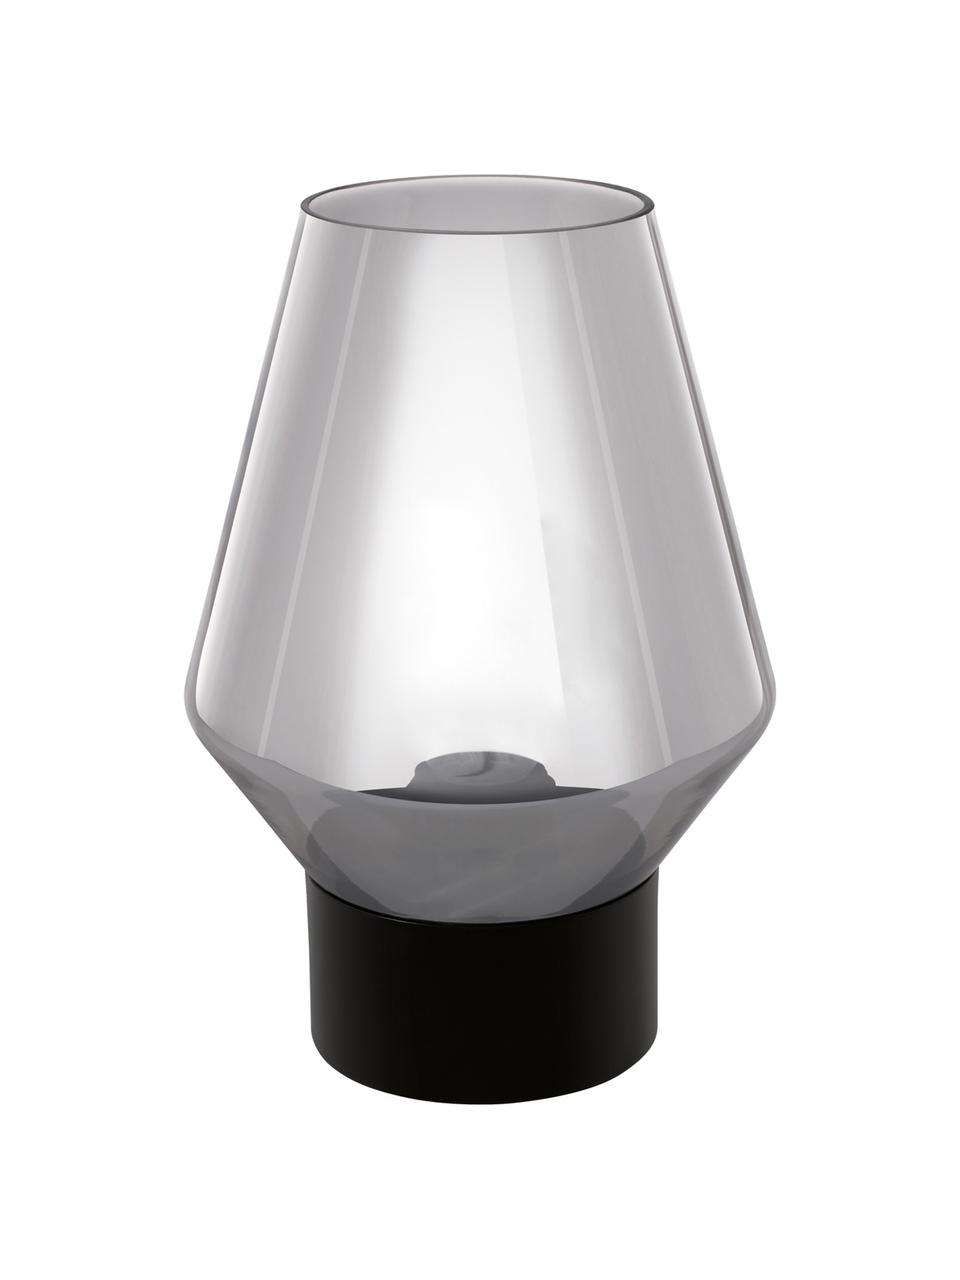 Tischlampe Verelli aus Glas, Lampenschirm: Glas, Lampenfuß: Holz, beschichtet, Grau, Ø 17 x H 25 cm